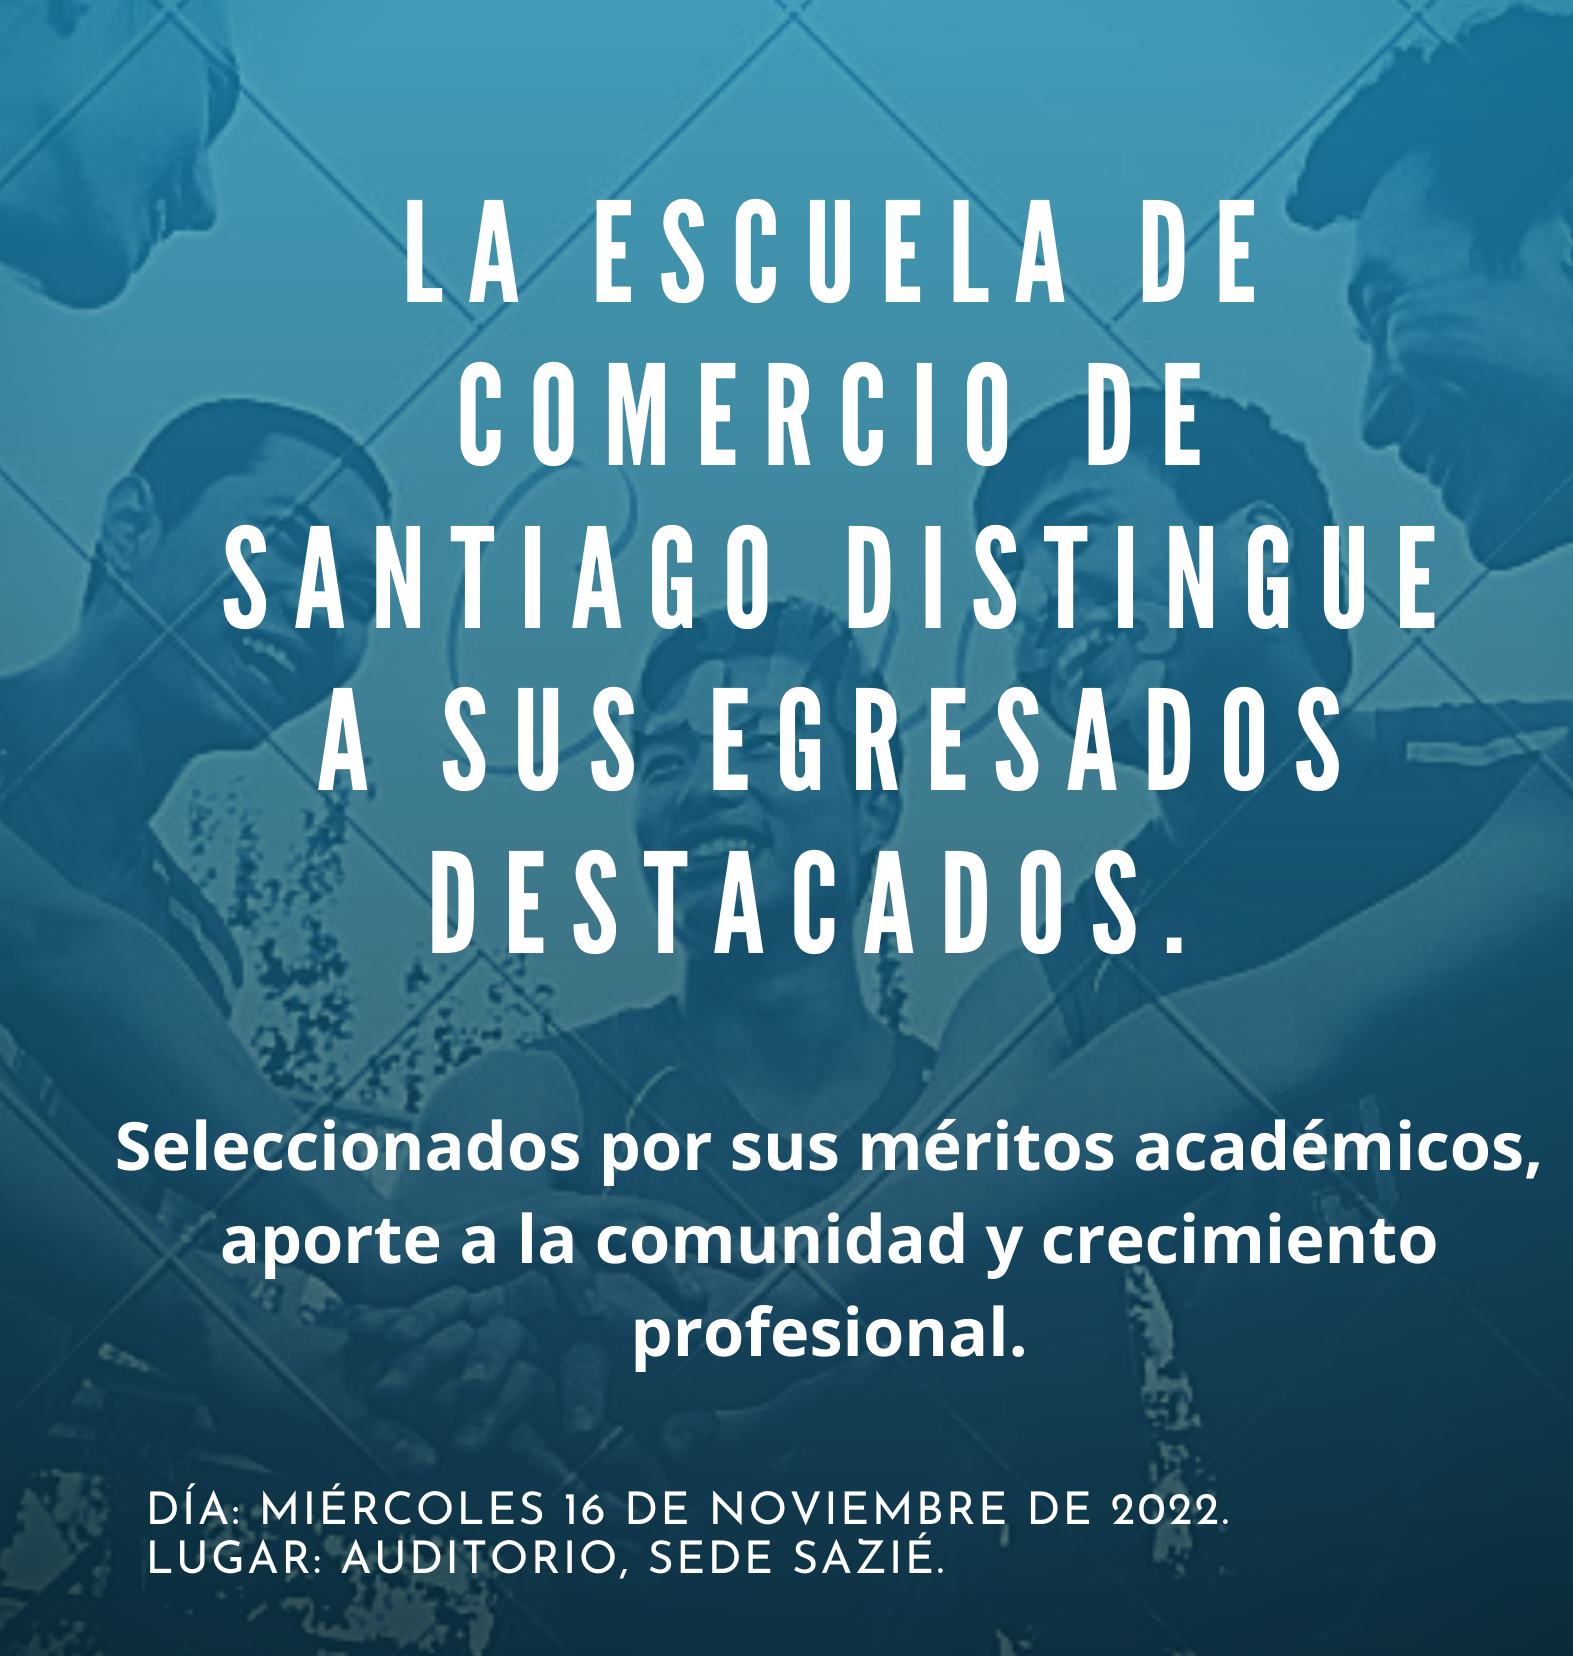 Escuela de Comercio - La Escuela de Comercio de Santiago distingue a sus egresados destacados